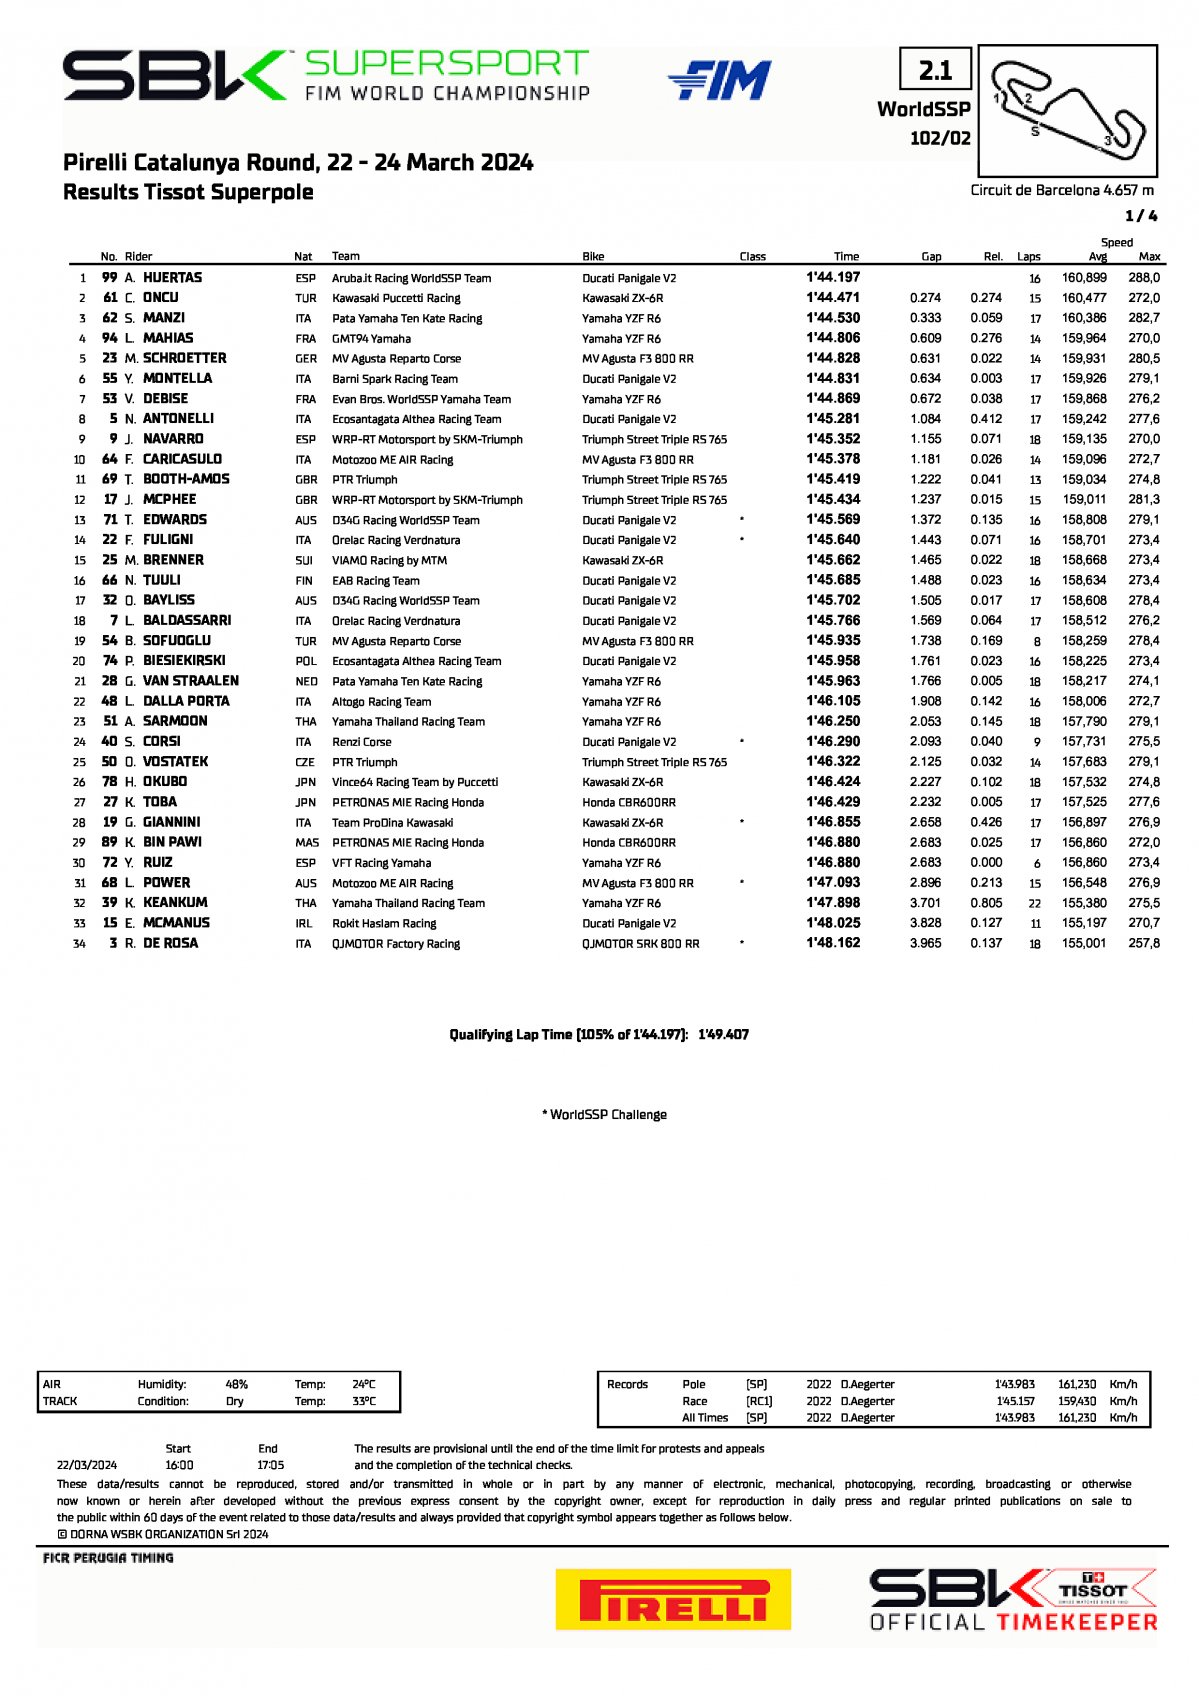 Результаты квалификации 2 этапа WorldSSP в Барселоне (23.03.2023)